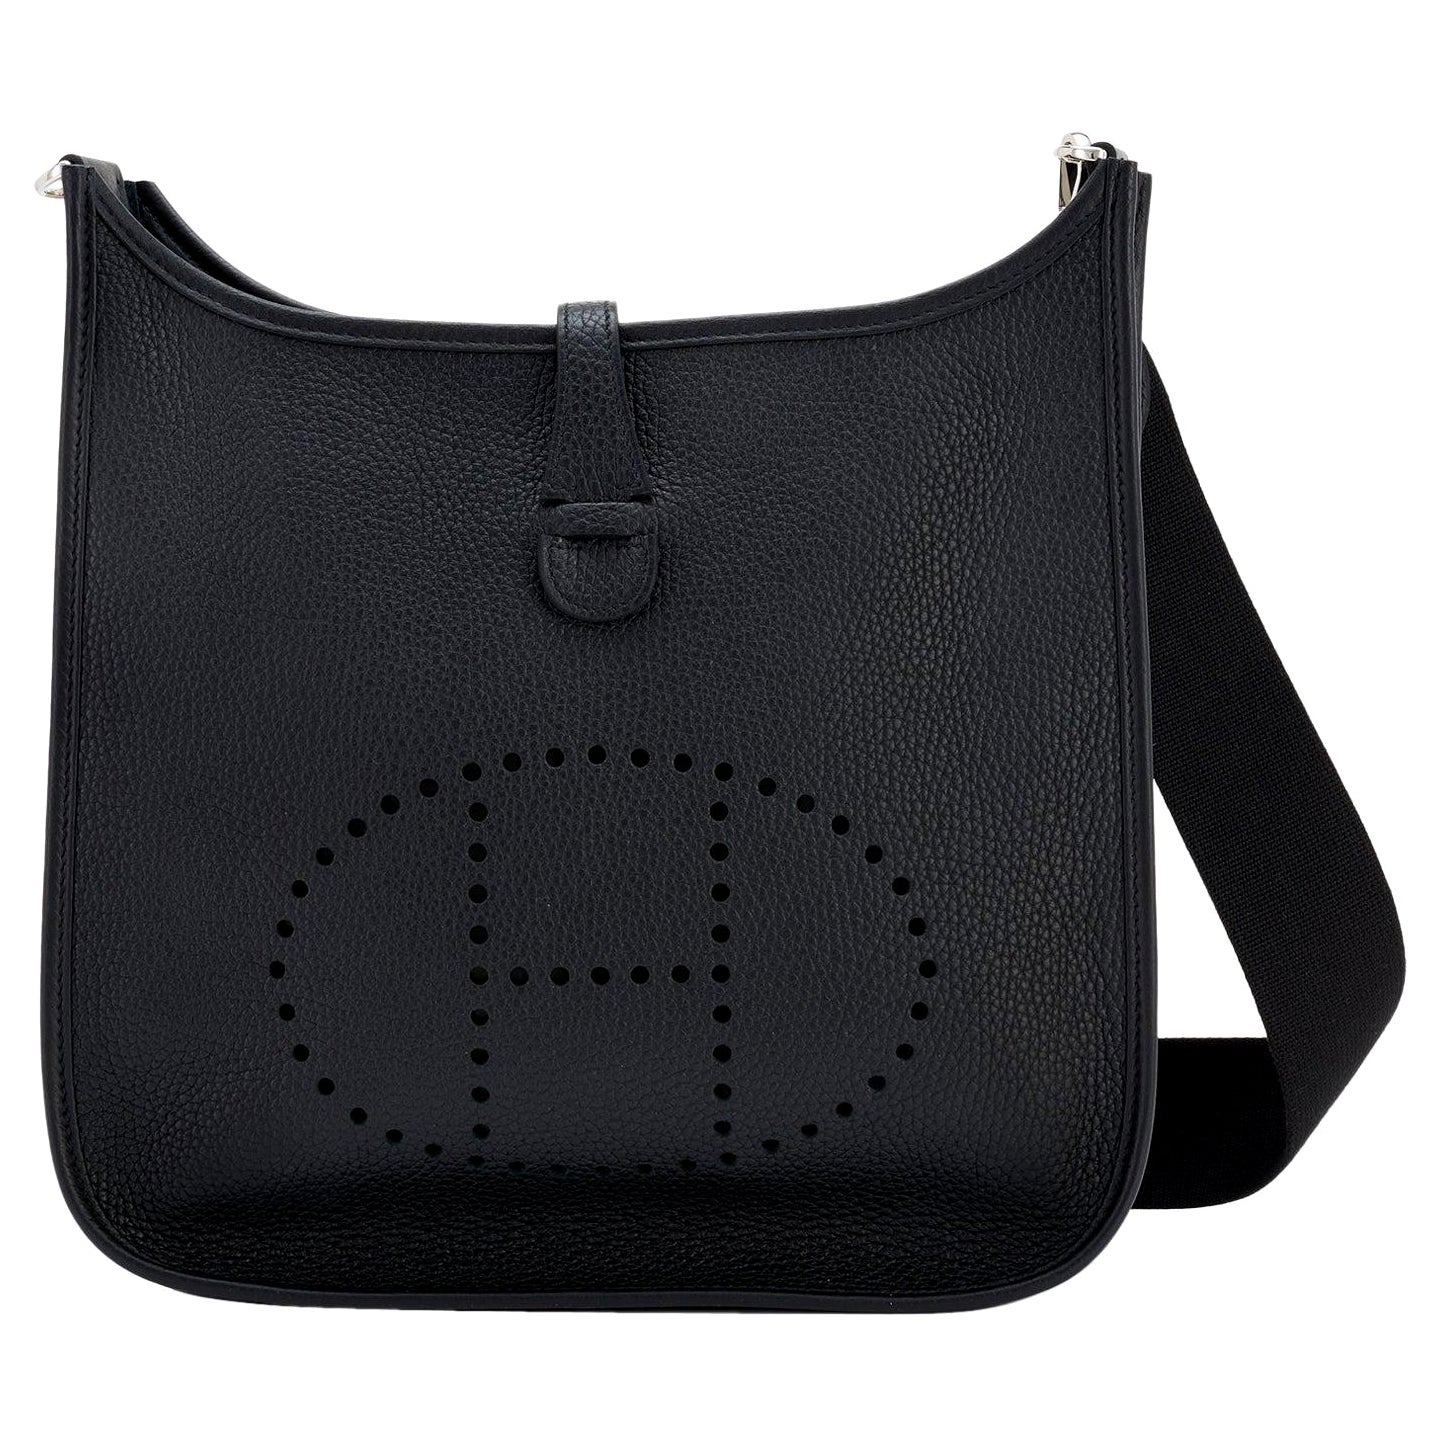 Hermes Black Evelyne III 29cm PM Cross-Body Messenger Bag NEW GIFT